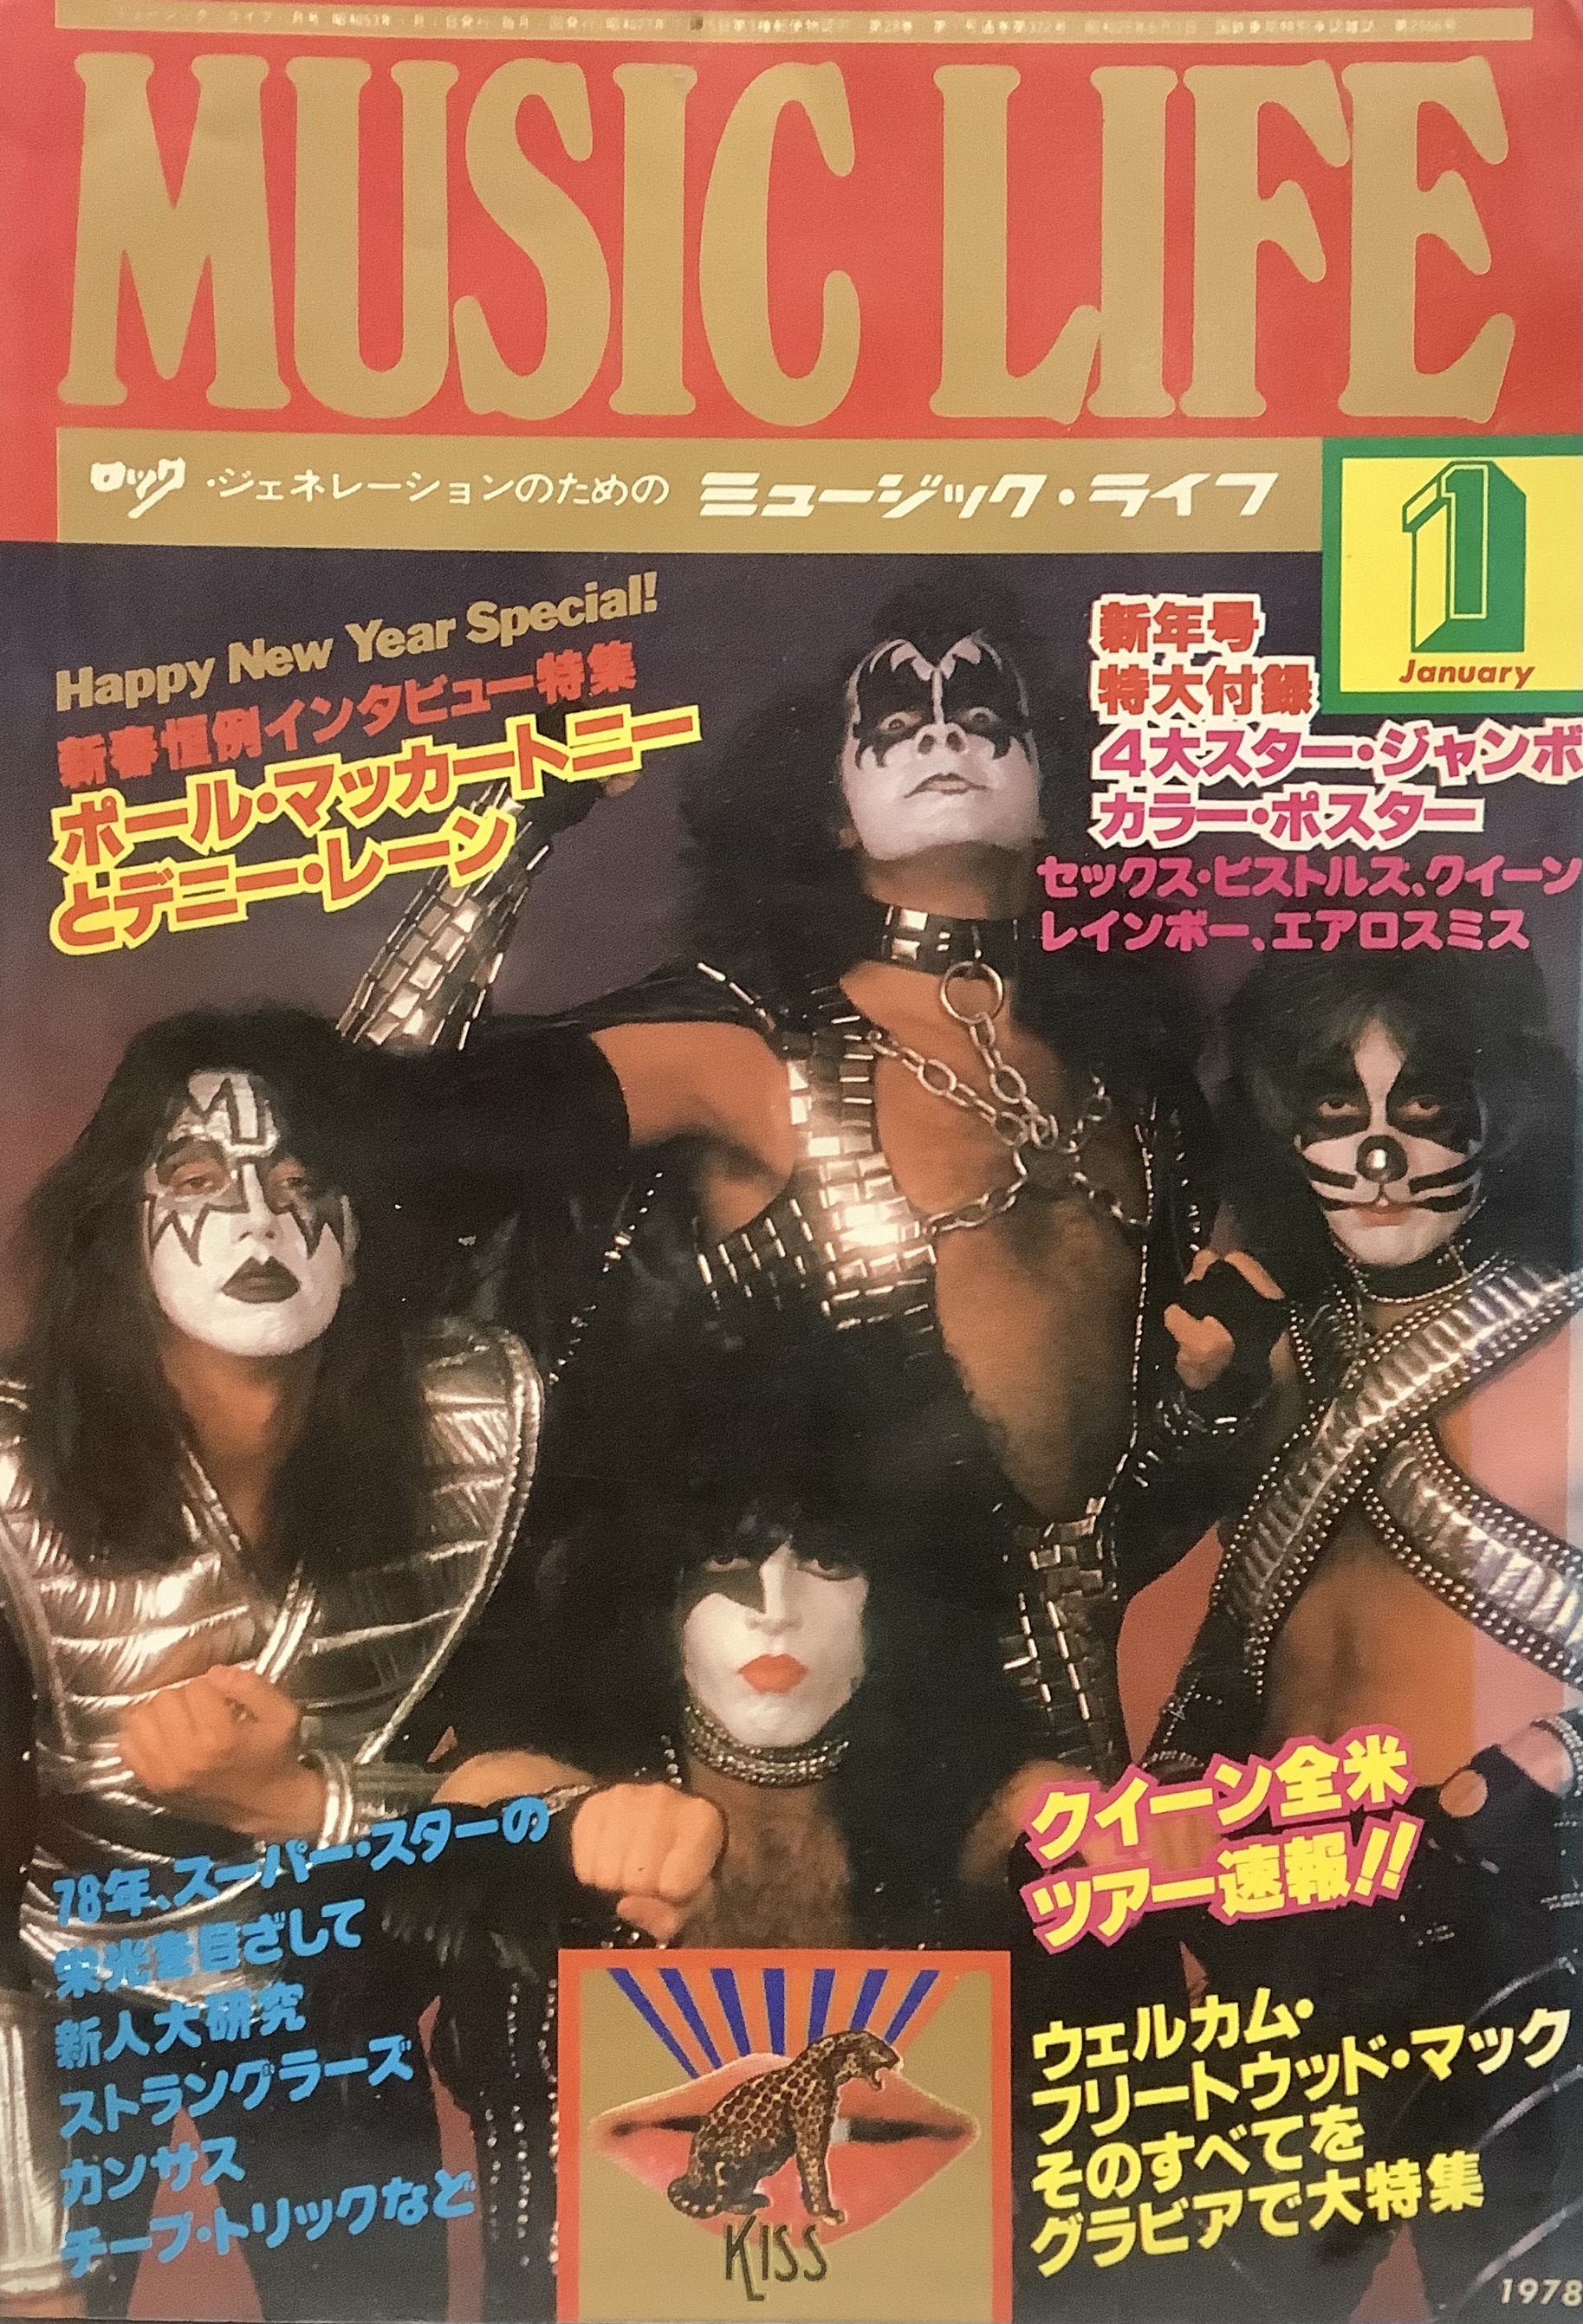 ミュージック・ライフ MUSIC LIFE 1978年1月号○表紙=KISS○特大付録